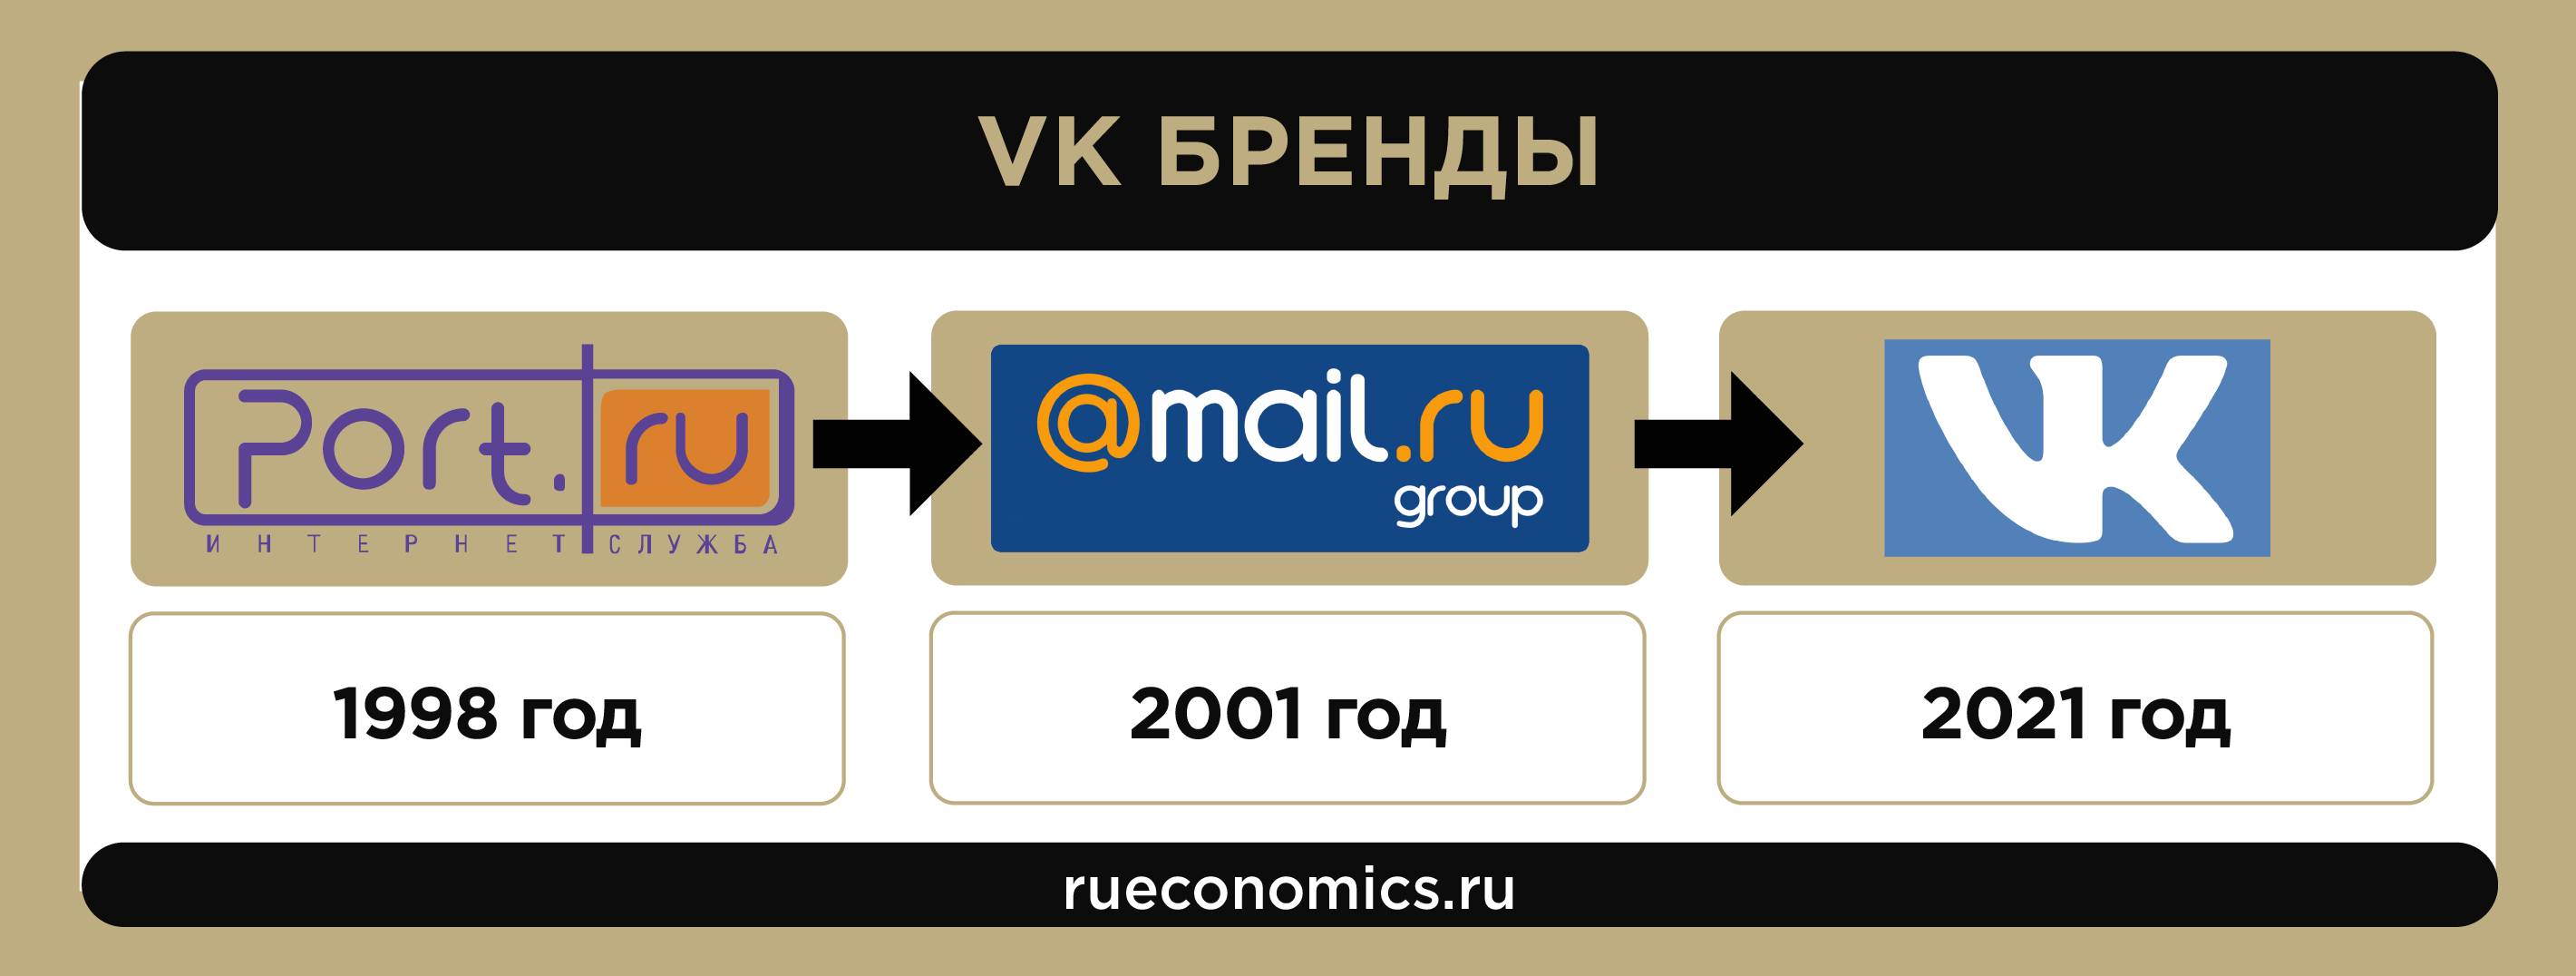 El camino del Grupo Mail.ru a VK: cómo el servicio postal se convirtió en una corporación multinacional